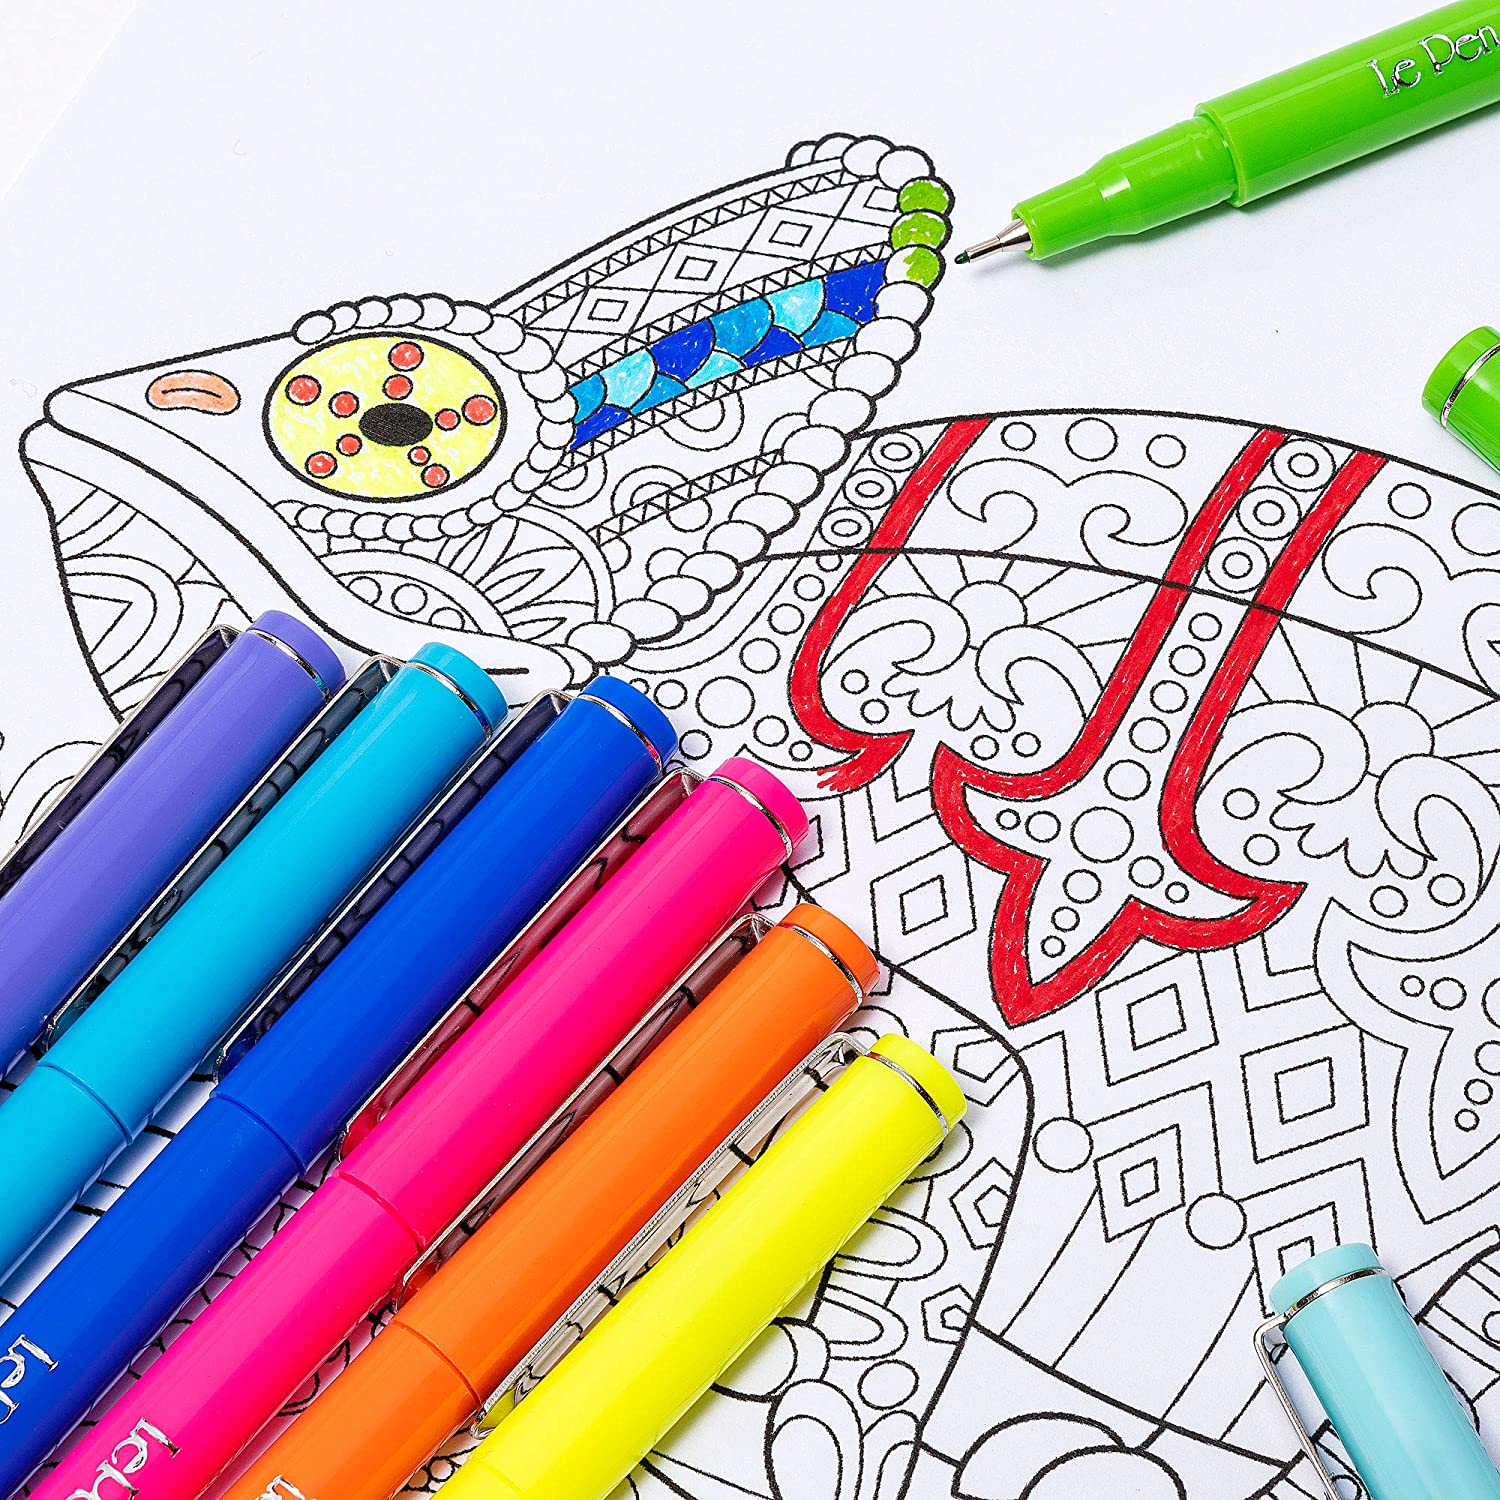 https://www.littlegiantkidz.com/cdn/shop/files/Le-Pens-Multicolor-Set-0_3mm-Fine-Point-Pens-Smudge-Proof-Ink-30-Count-Basic-Neon-and-Pastel-Colors-Montrose-Colors-Inc-3.jpg?v=1690322008&width=1500